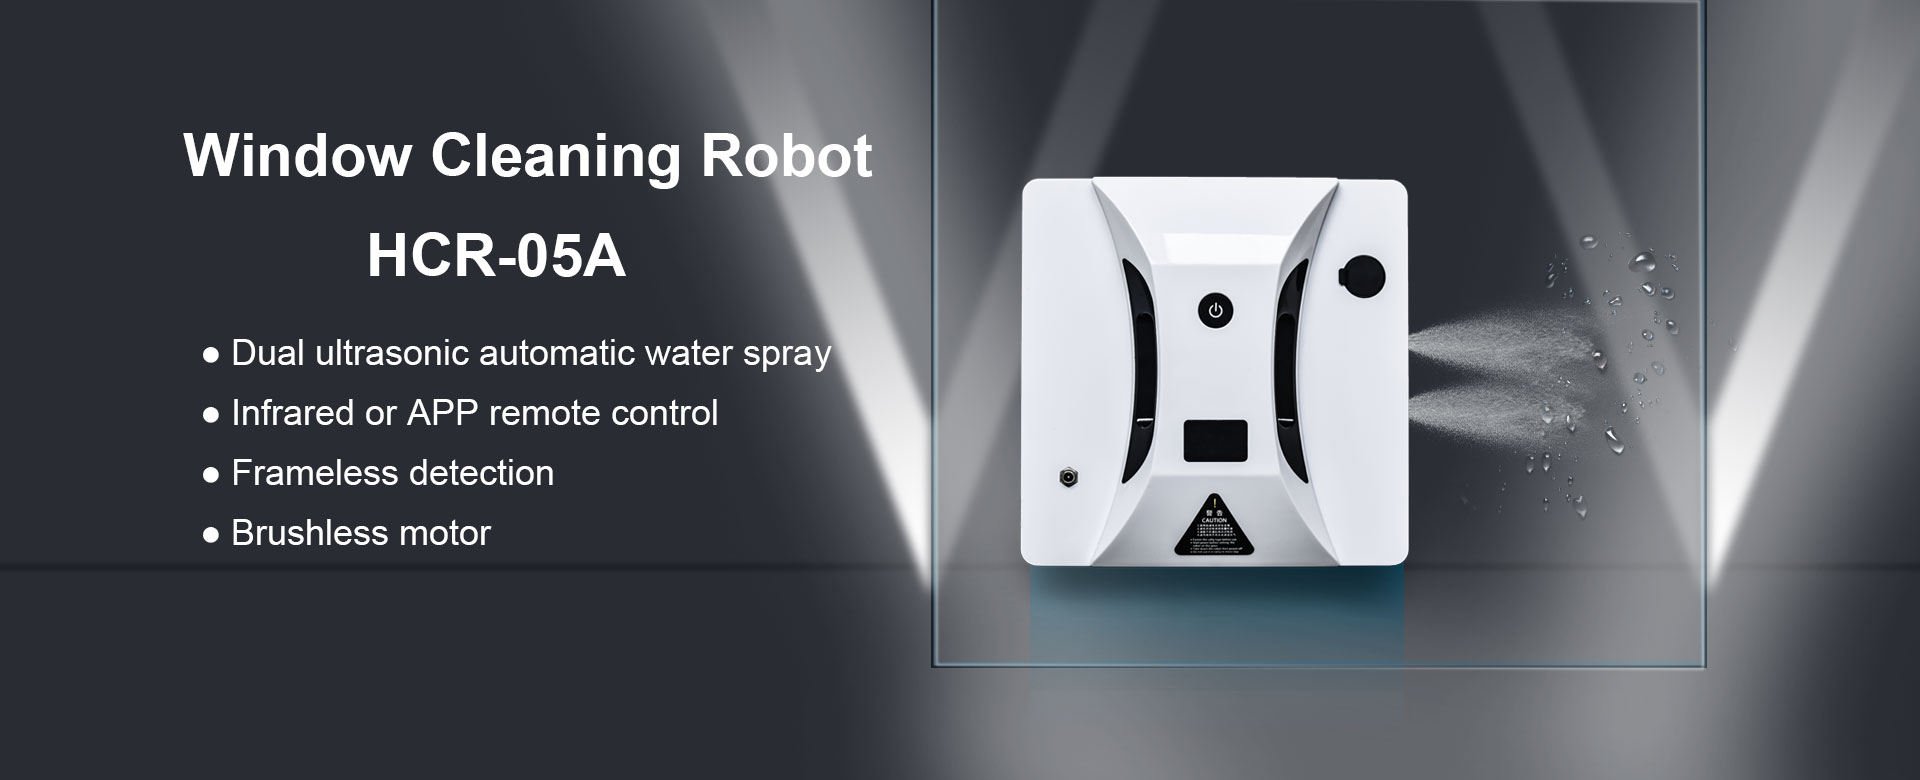 Квадратный робот для мытья окон